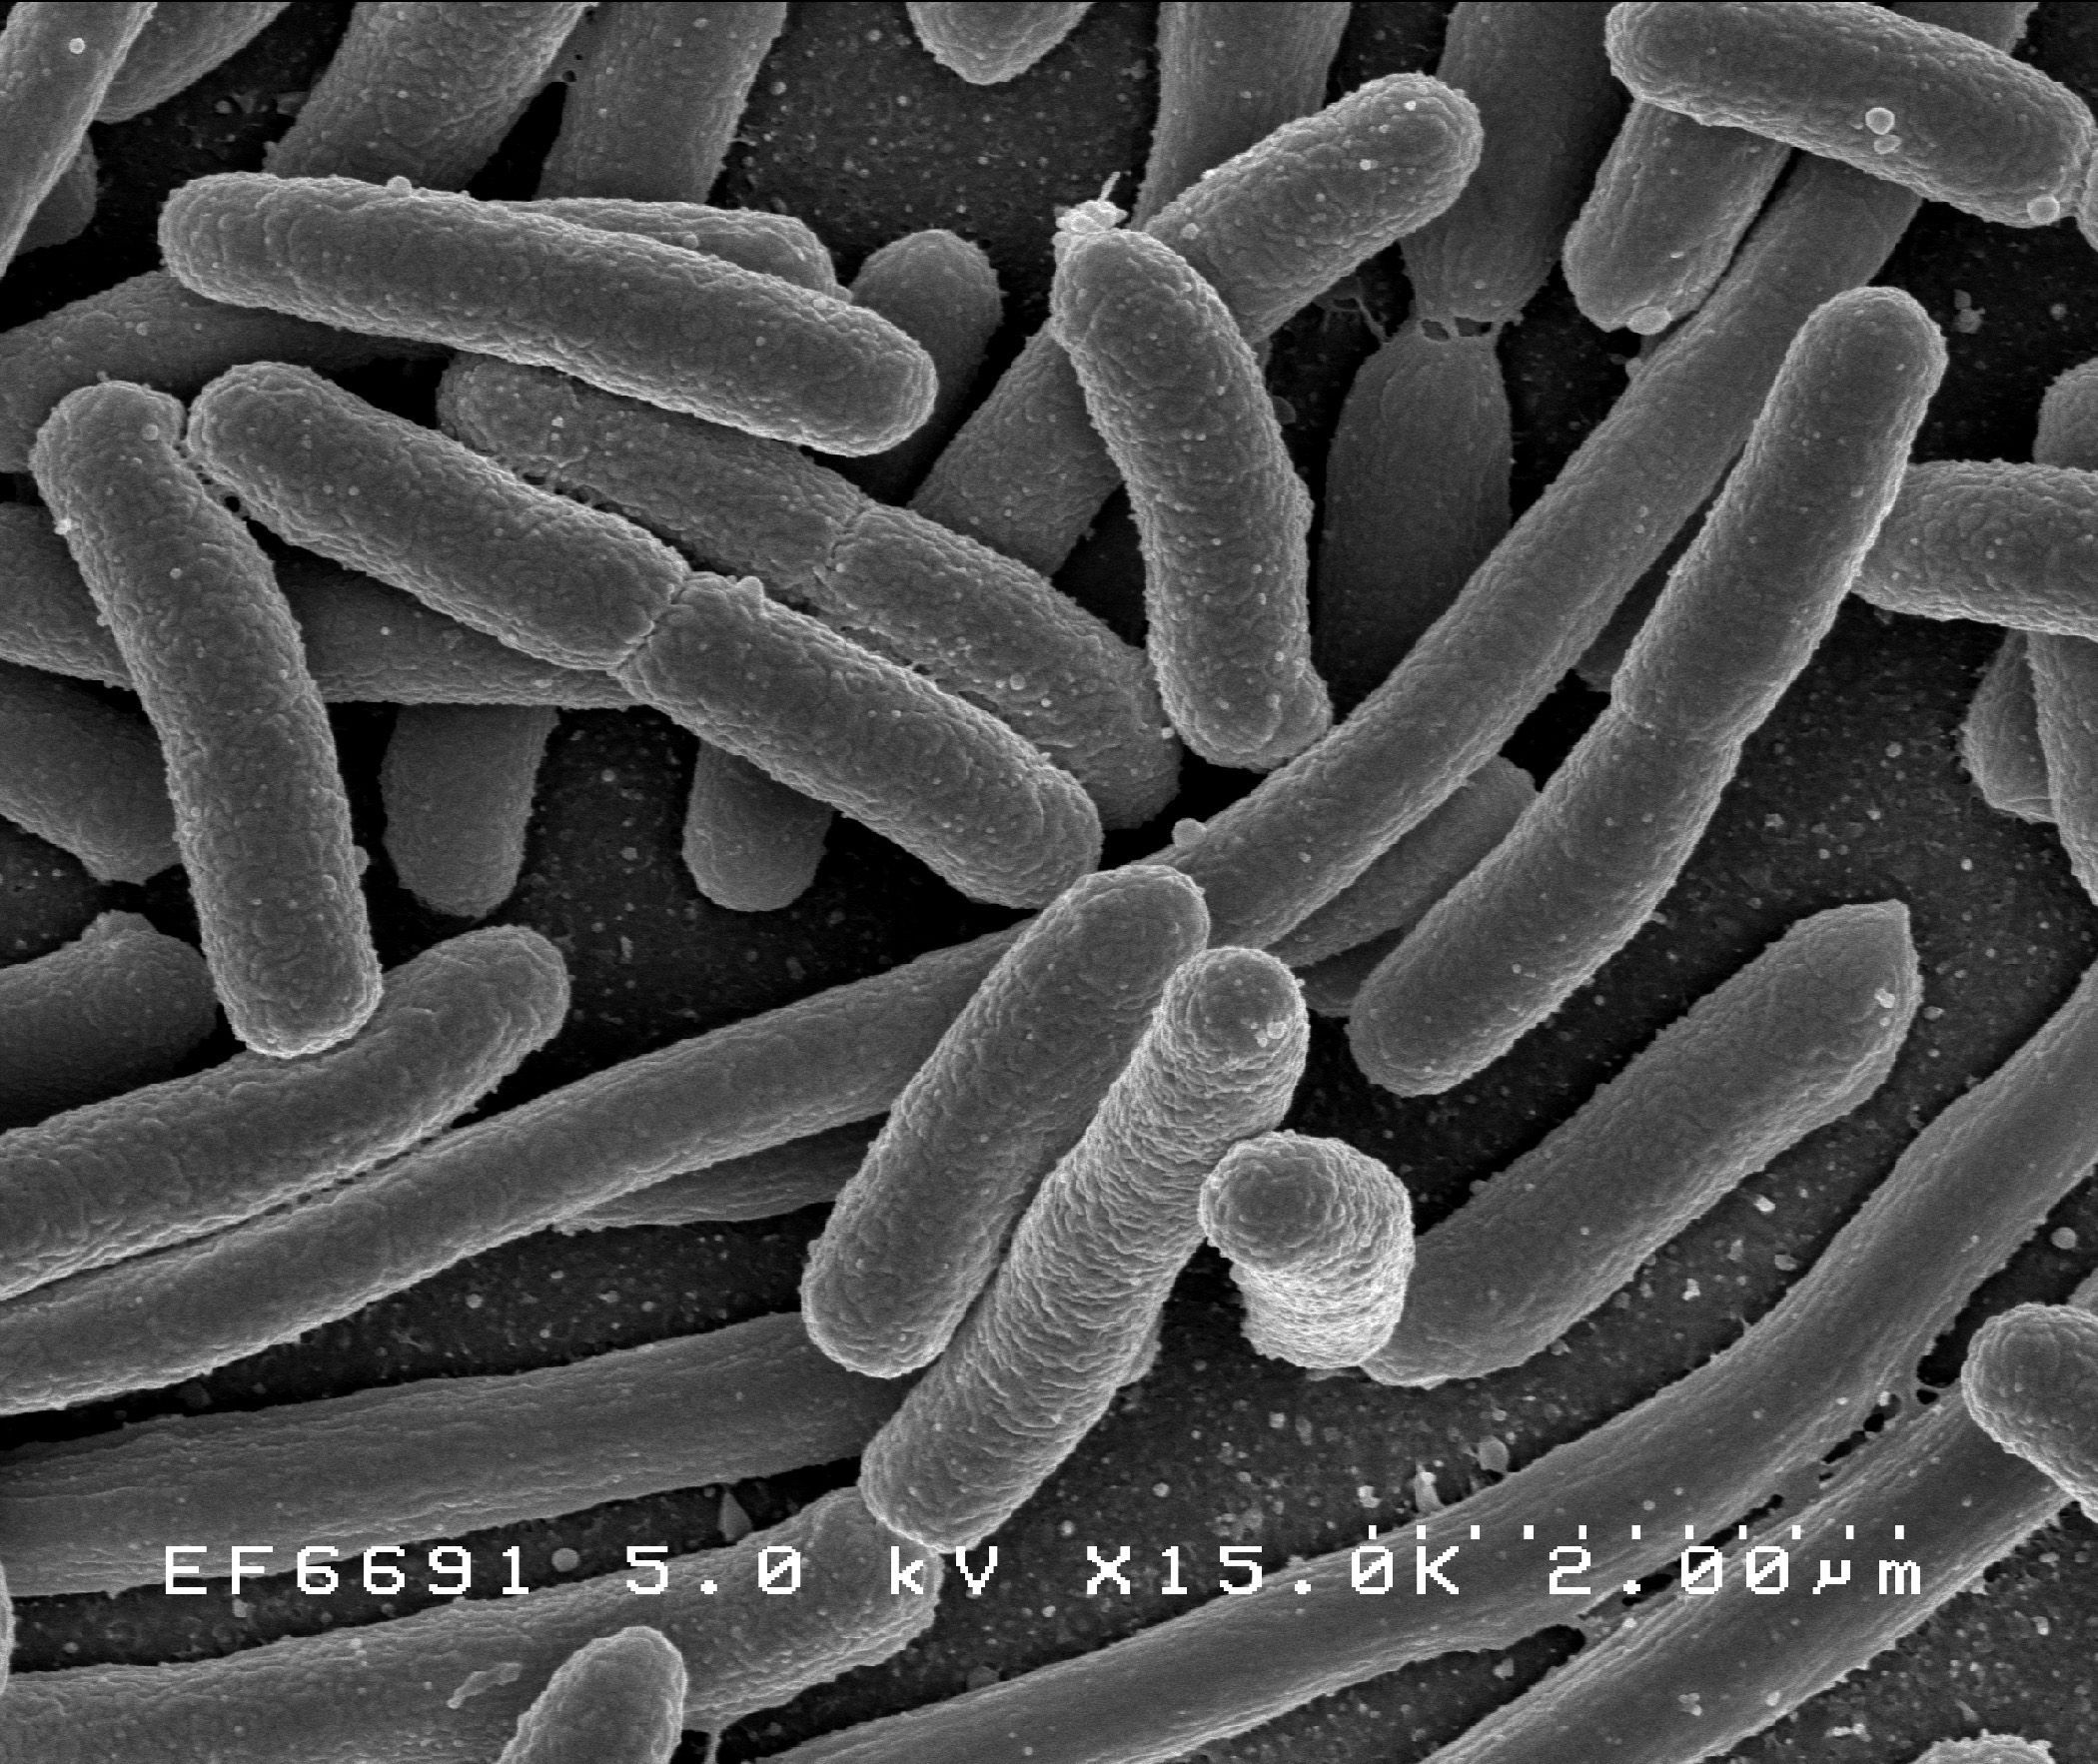 Coli E. coli